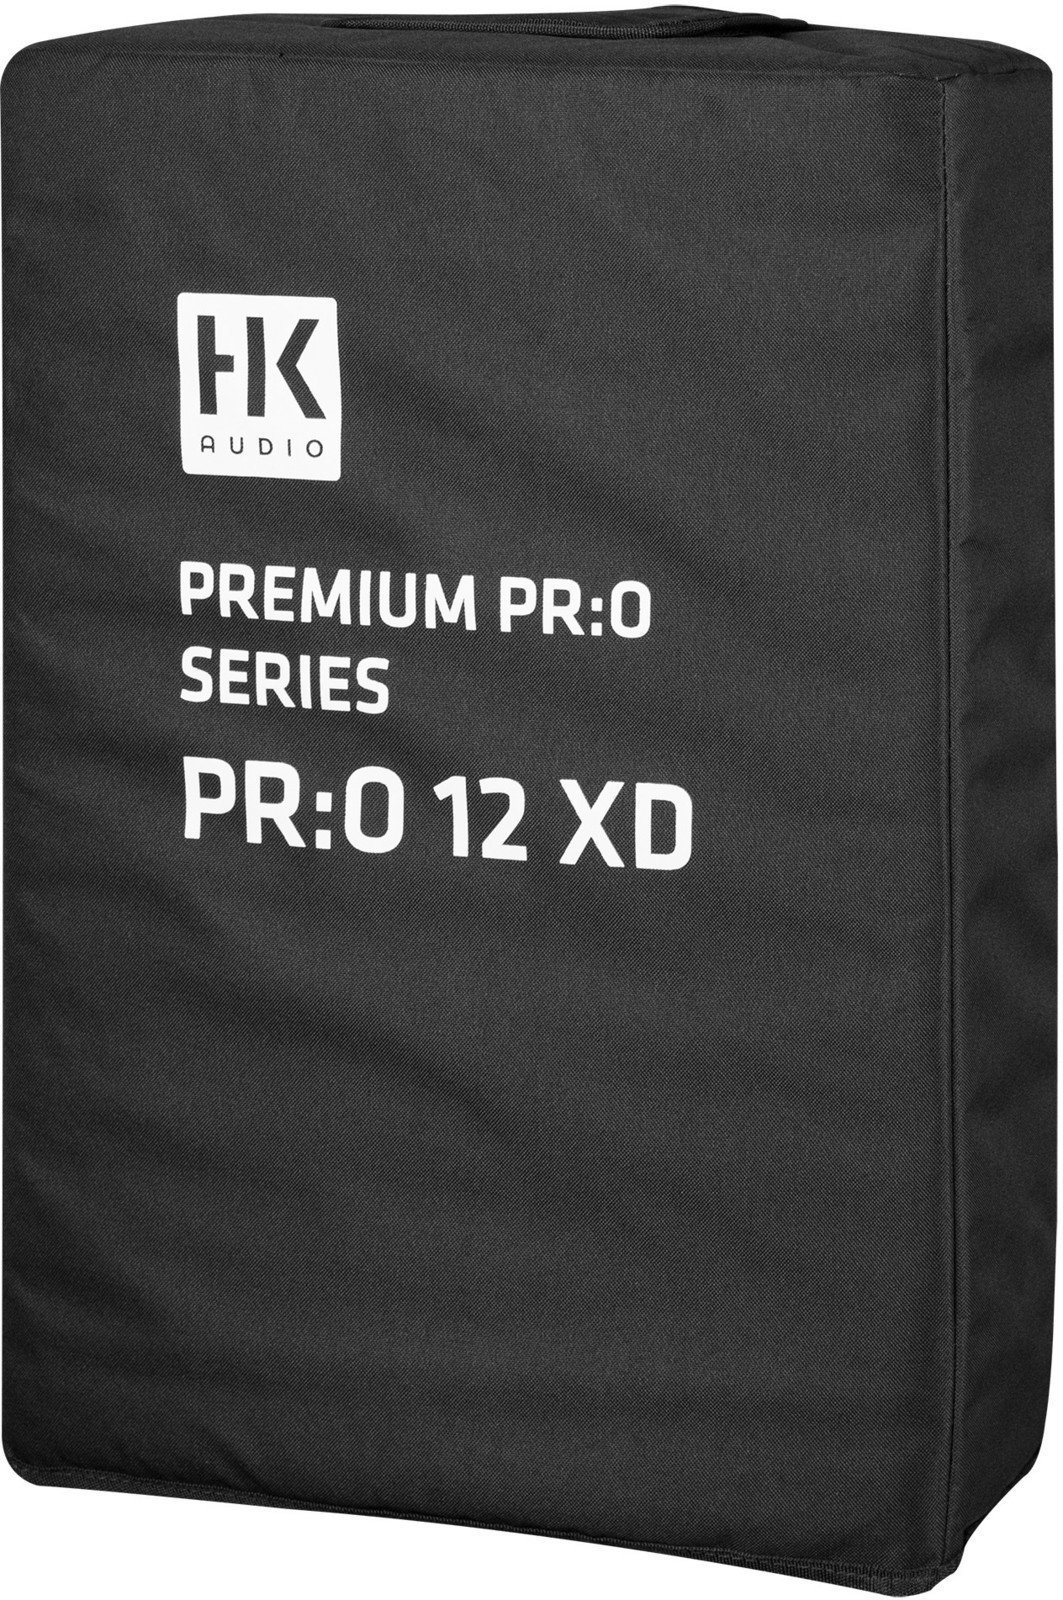 Tas voor luidsprekers HK Audio PR:O 12 XD CVR Tas voor luidsprekers